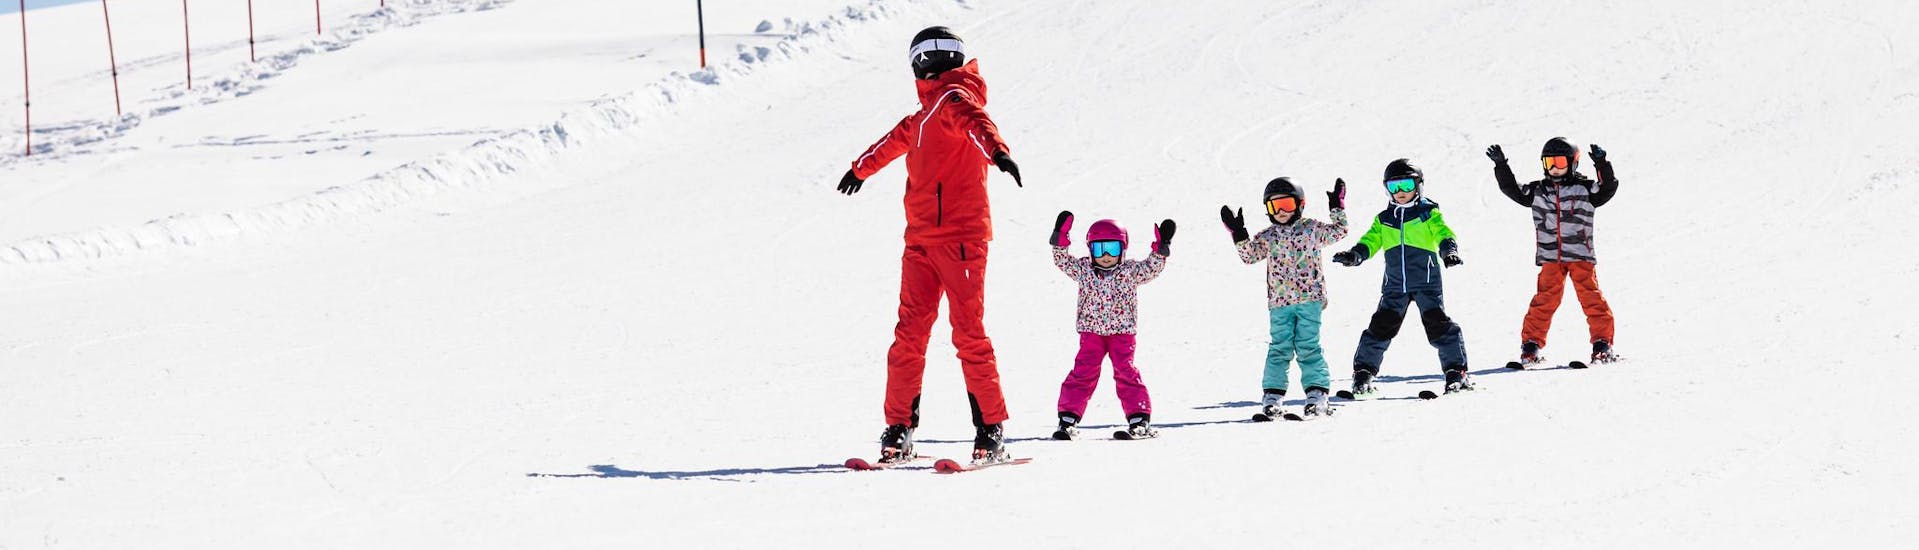 Ski instructor and kids enjoy a ski lesson with a ski school near Zwieselstein.